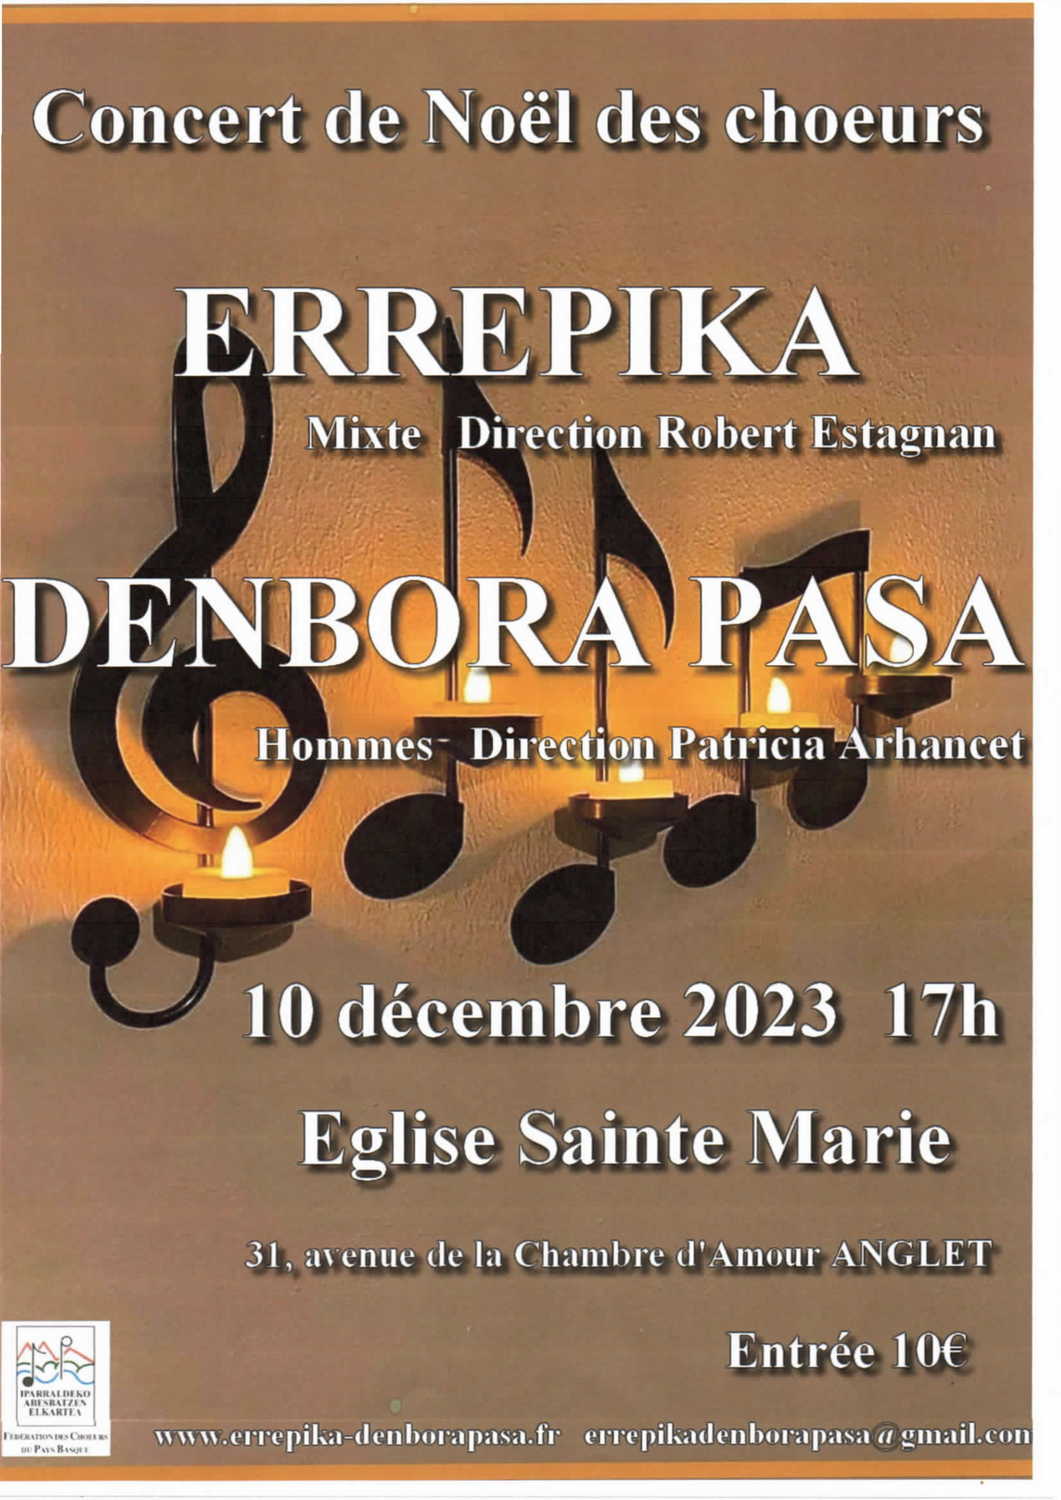 Le 10 décembre prochain, concert de Noël à Sainte-Marie